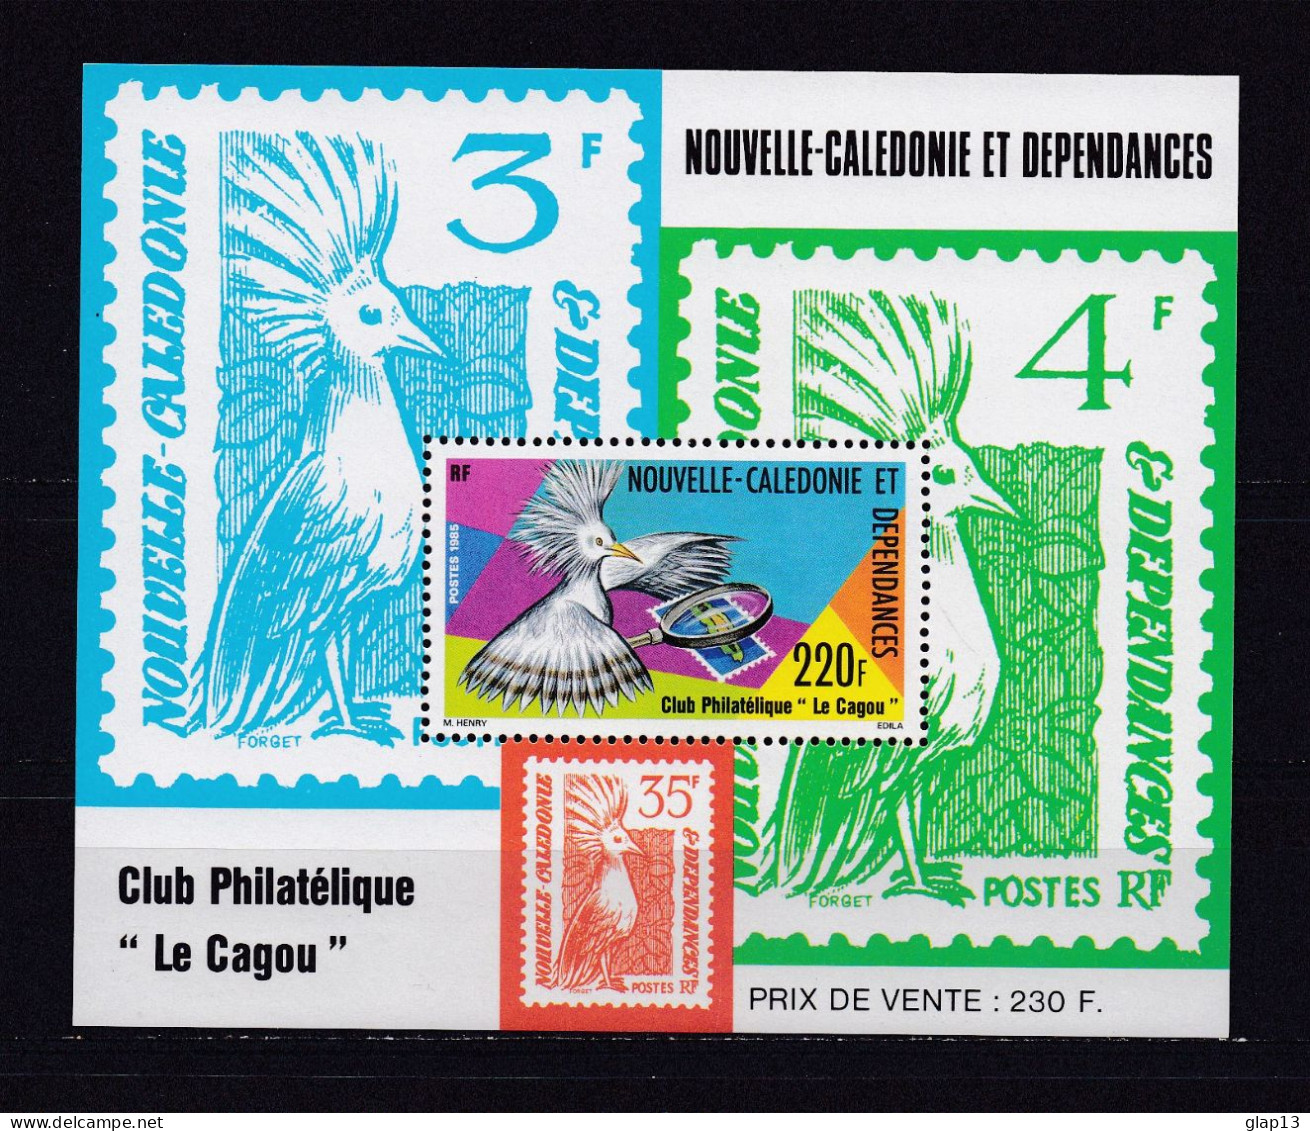 NOUVELLE-CALEDONIE 1985 BLOC N°7 NEUF** LE CAGOU - Blocks & Sheetlets